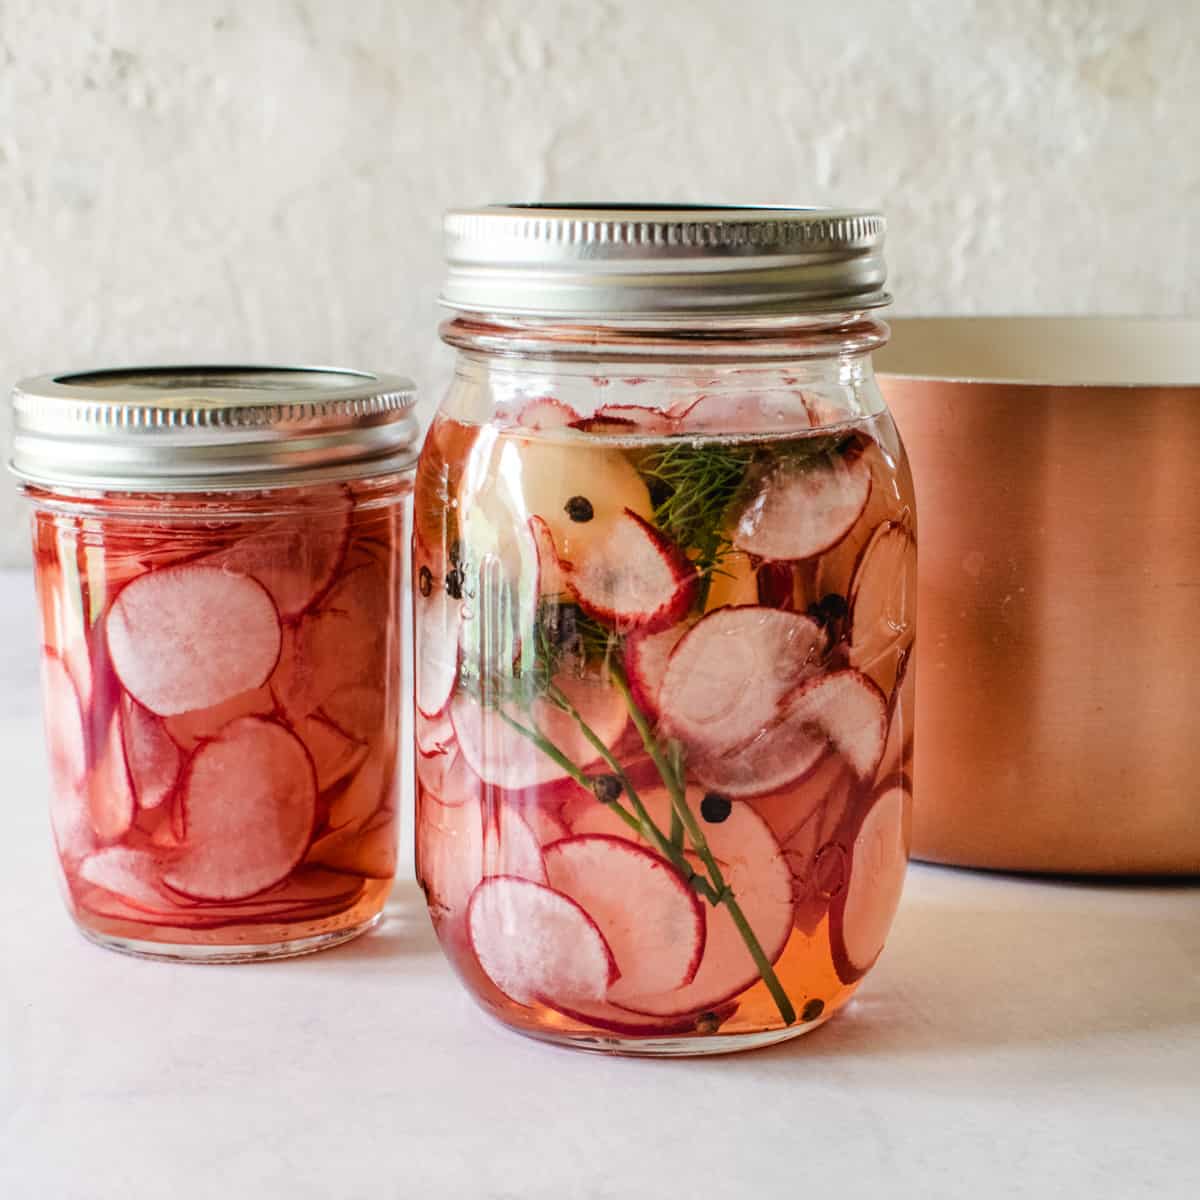 lids on mason jars of sliced radishes and brine